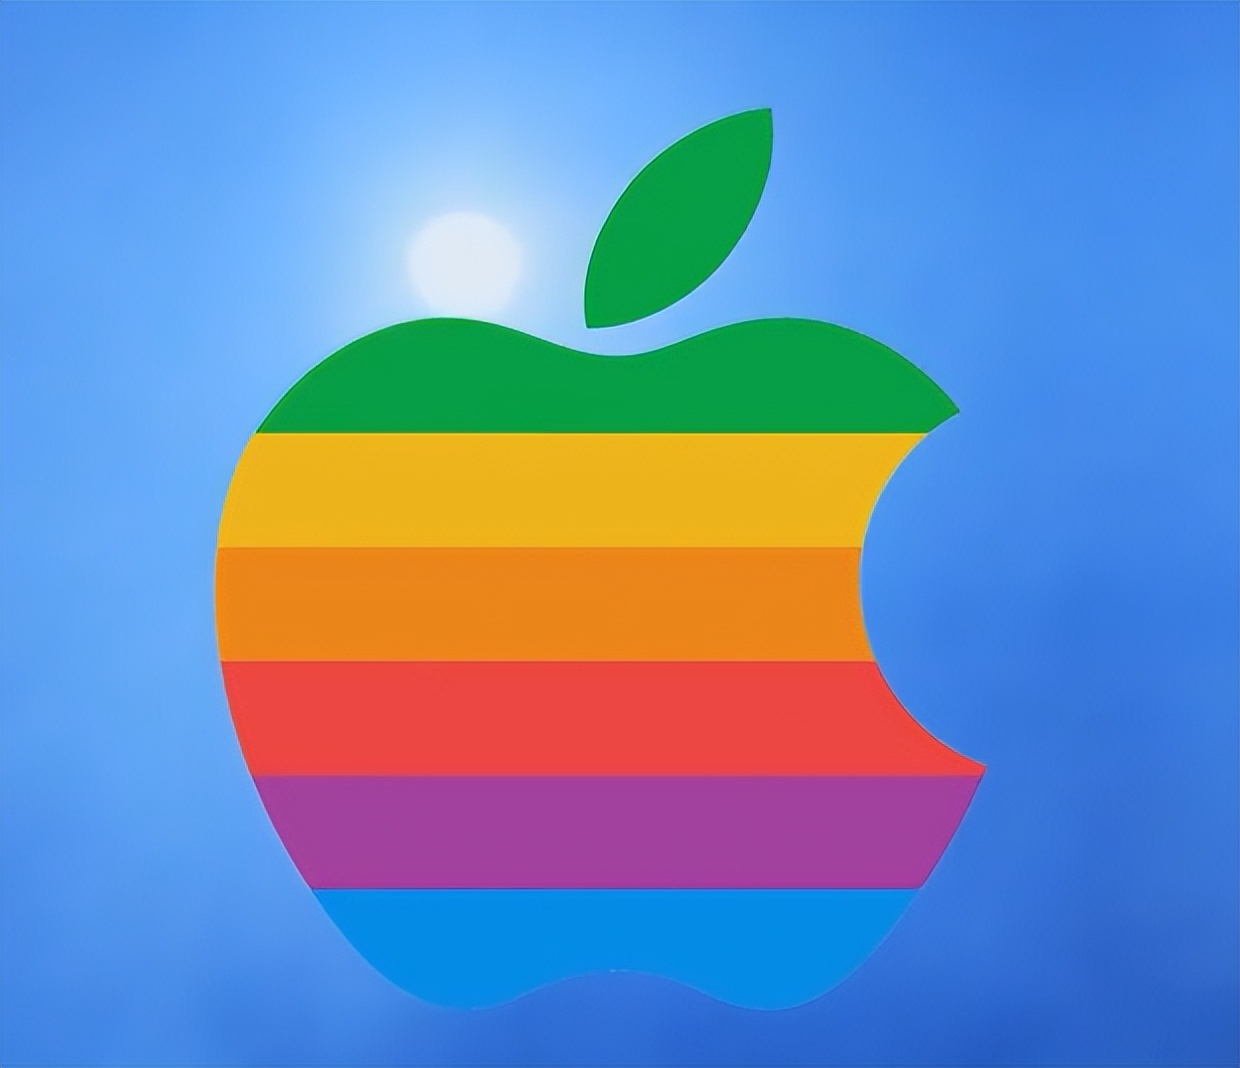 苹果logo复制图片